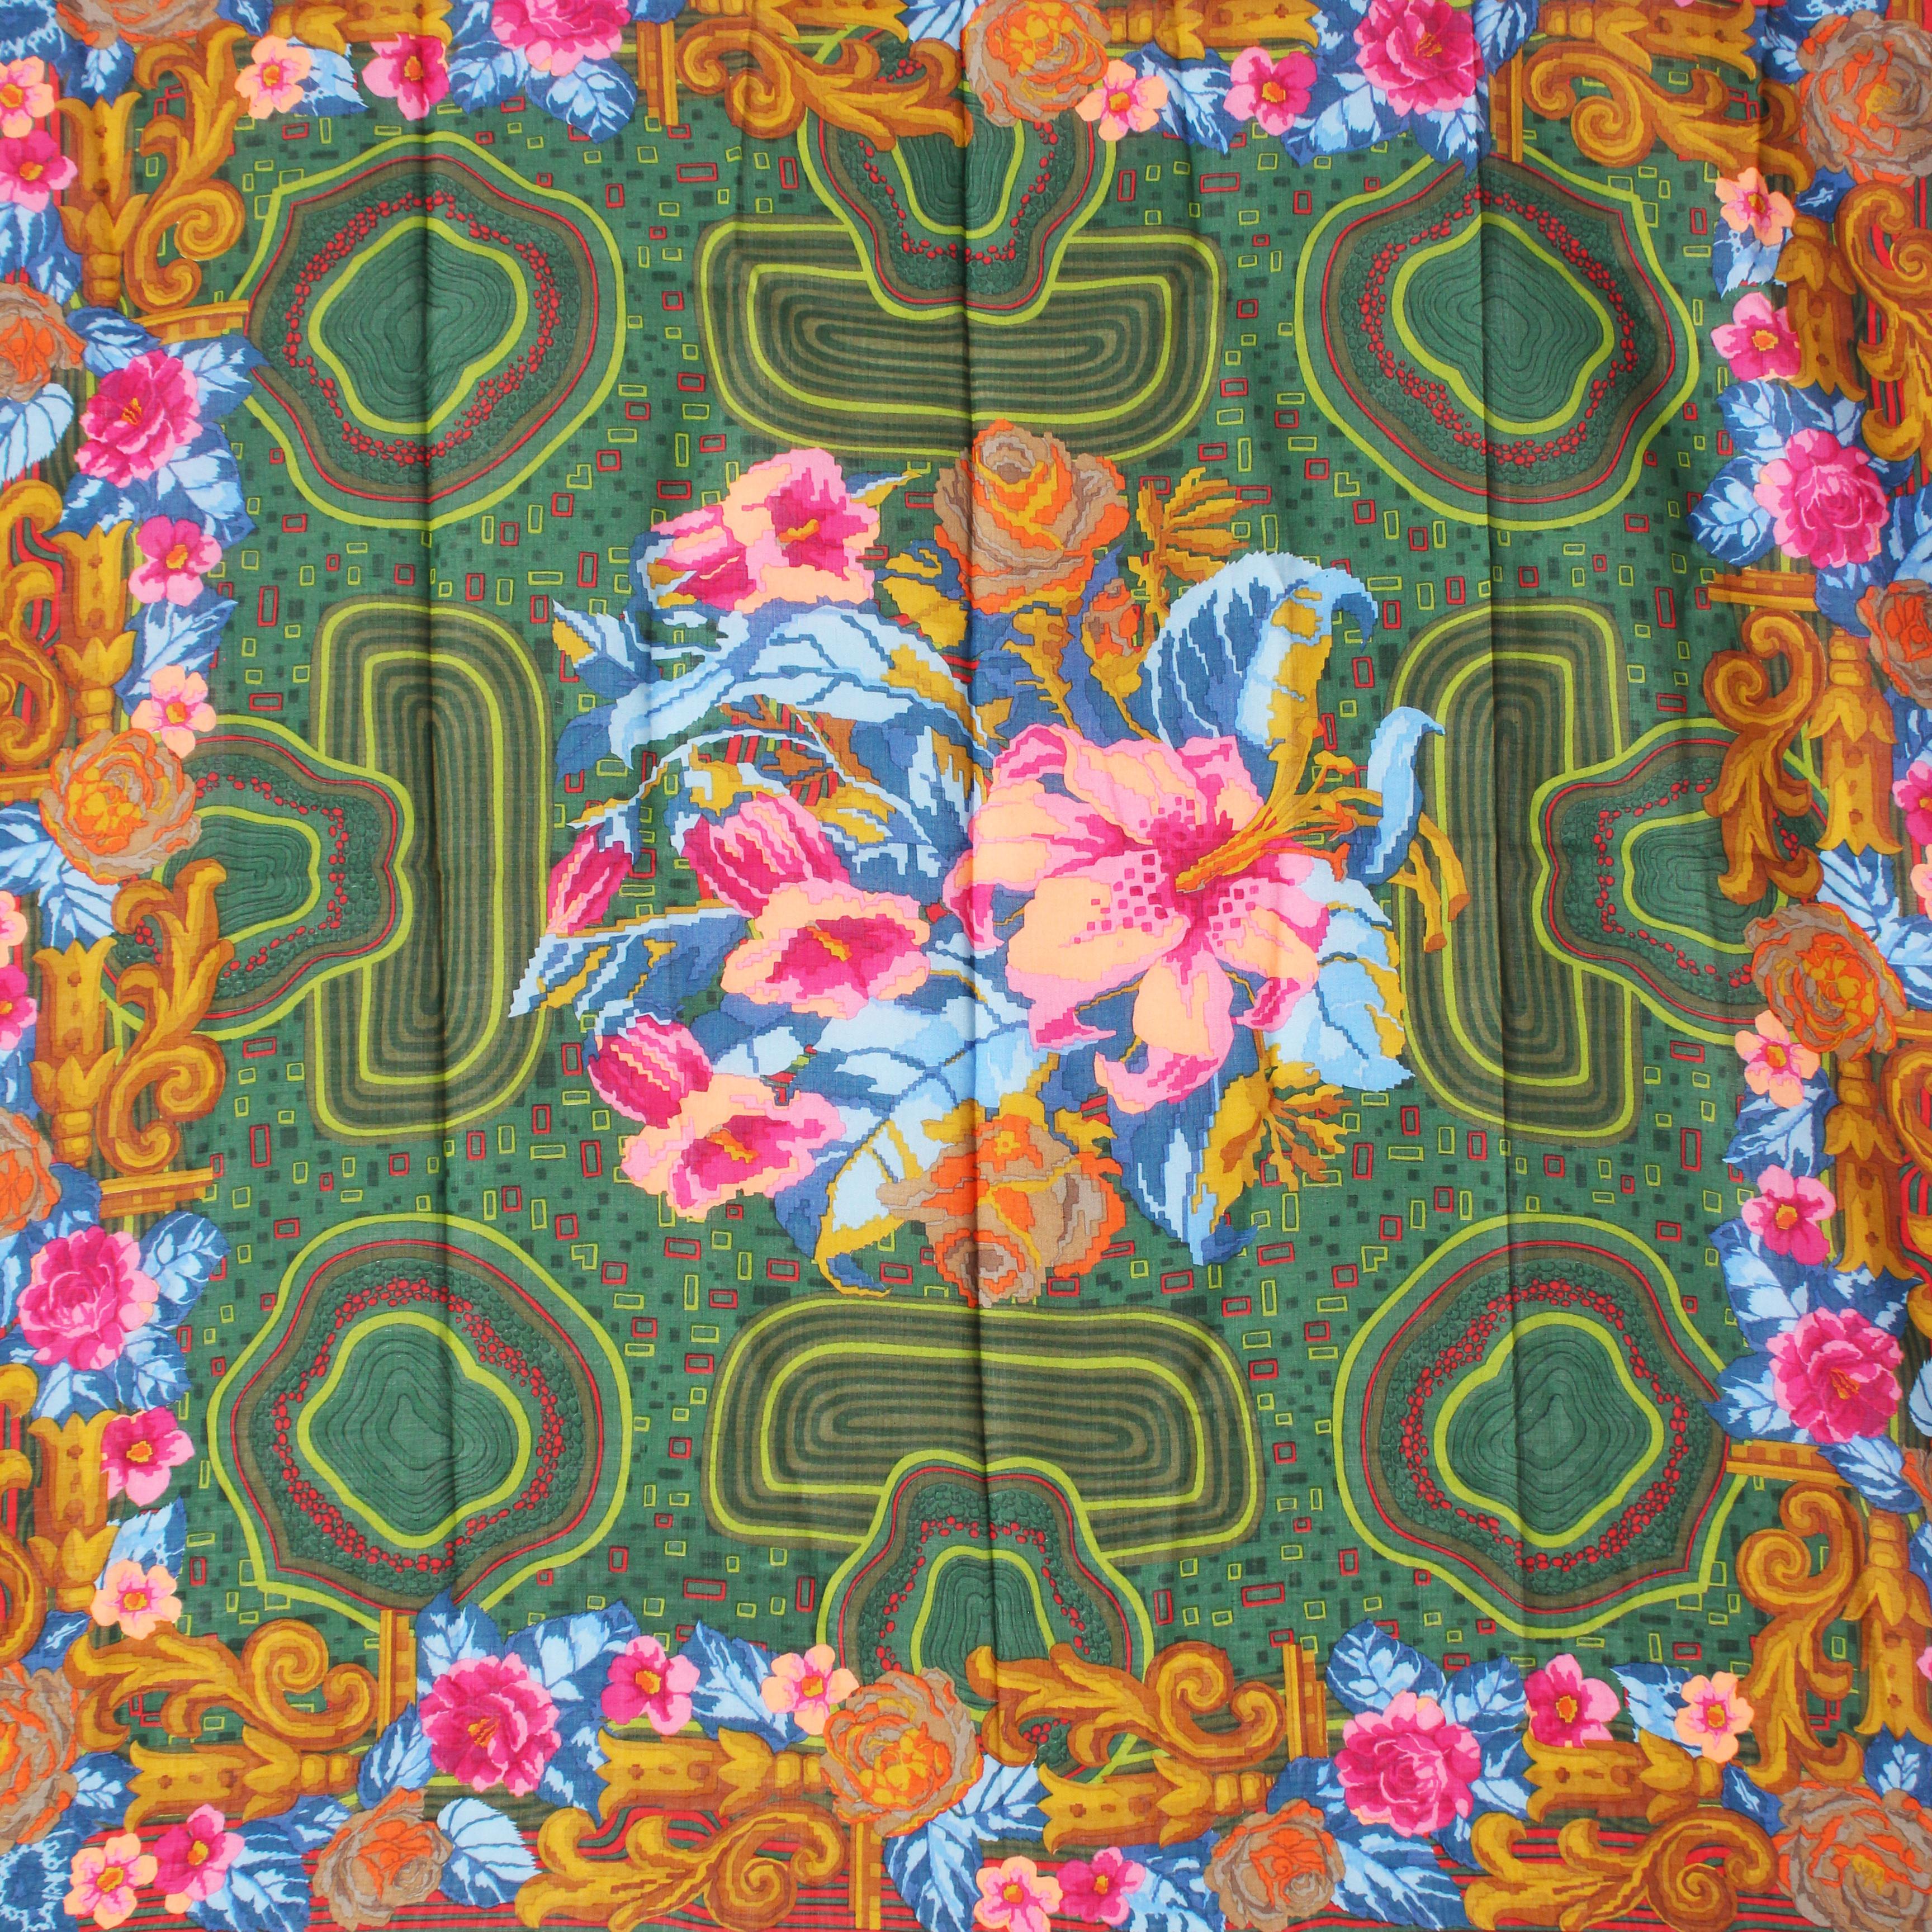 Écharpe ou châle vintage d'occasion à imprimé floral, fabriqué par Christian Lacroix, probablement dans les années 90.  Confectionné dans une étoffe transparente en laine et soie, il présente des motifs floraux audacieux dans des tons de vert, de